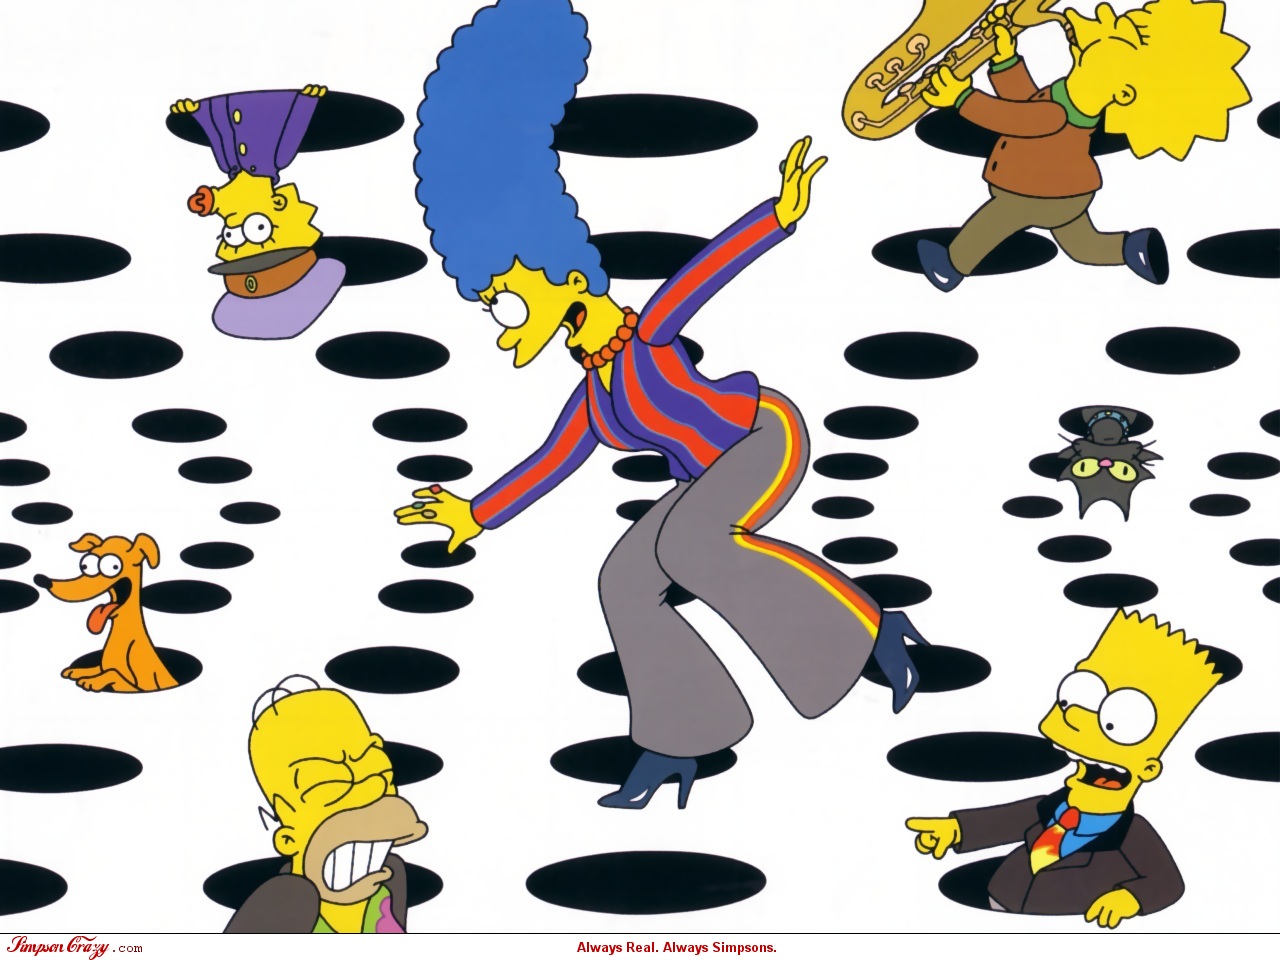 Скачать обои бесплатно Телешоу, Барт Симпсон, Лиза Симпсон, Симпсоны, Гомер Симпсон, Мэгги Симпсон, Мардж Симпсон картинка на рабочий стол ПК